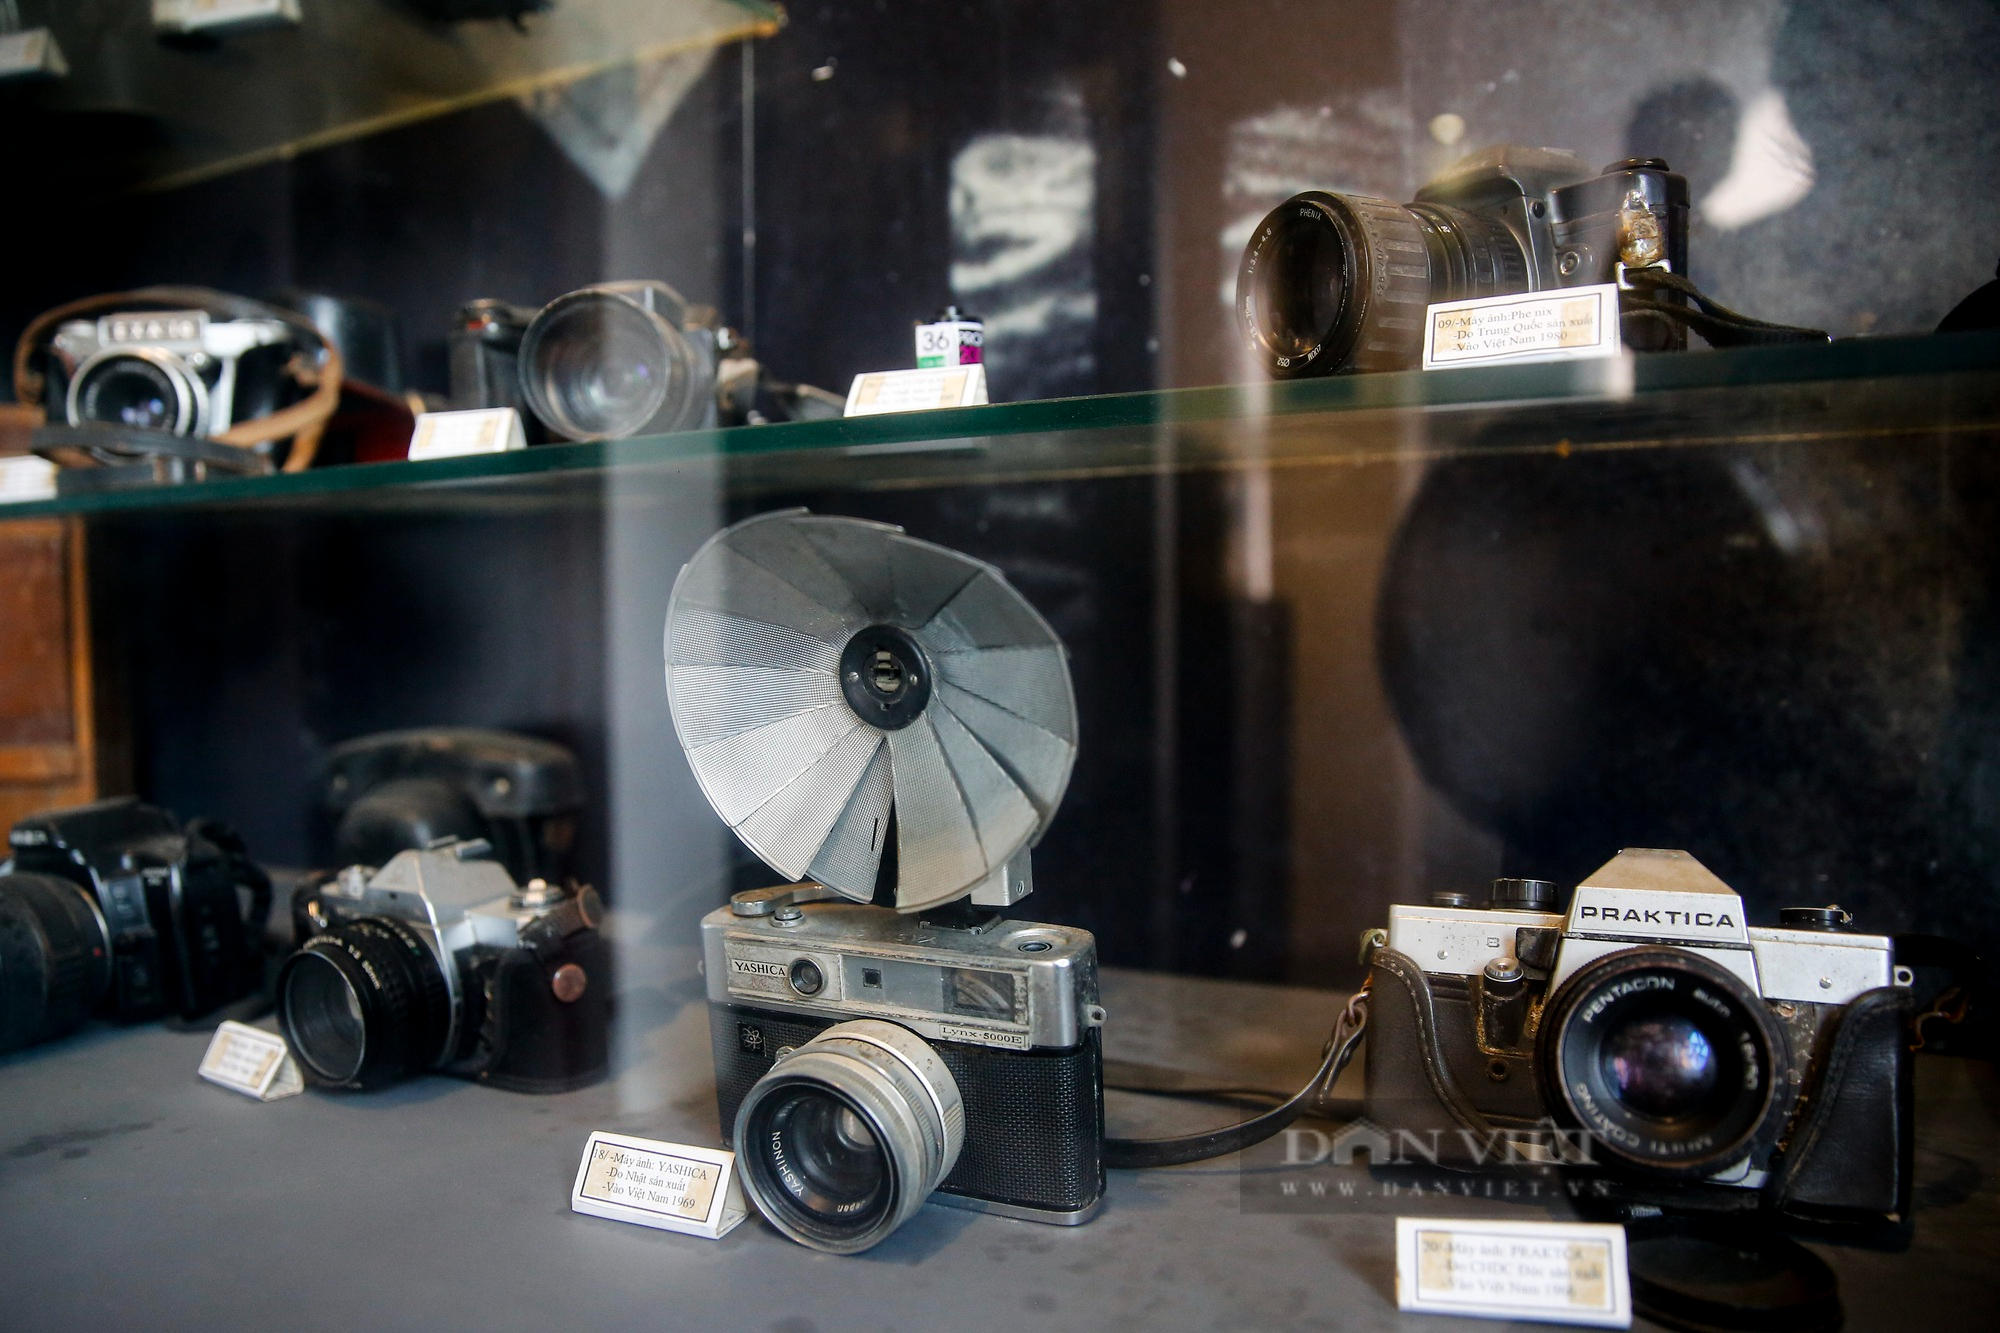 Khám phá bảo tàng nhiếp ảnh đầu tiên tại Hà Nội do dân làng góp tiền xây dựng - Ảnh 11.